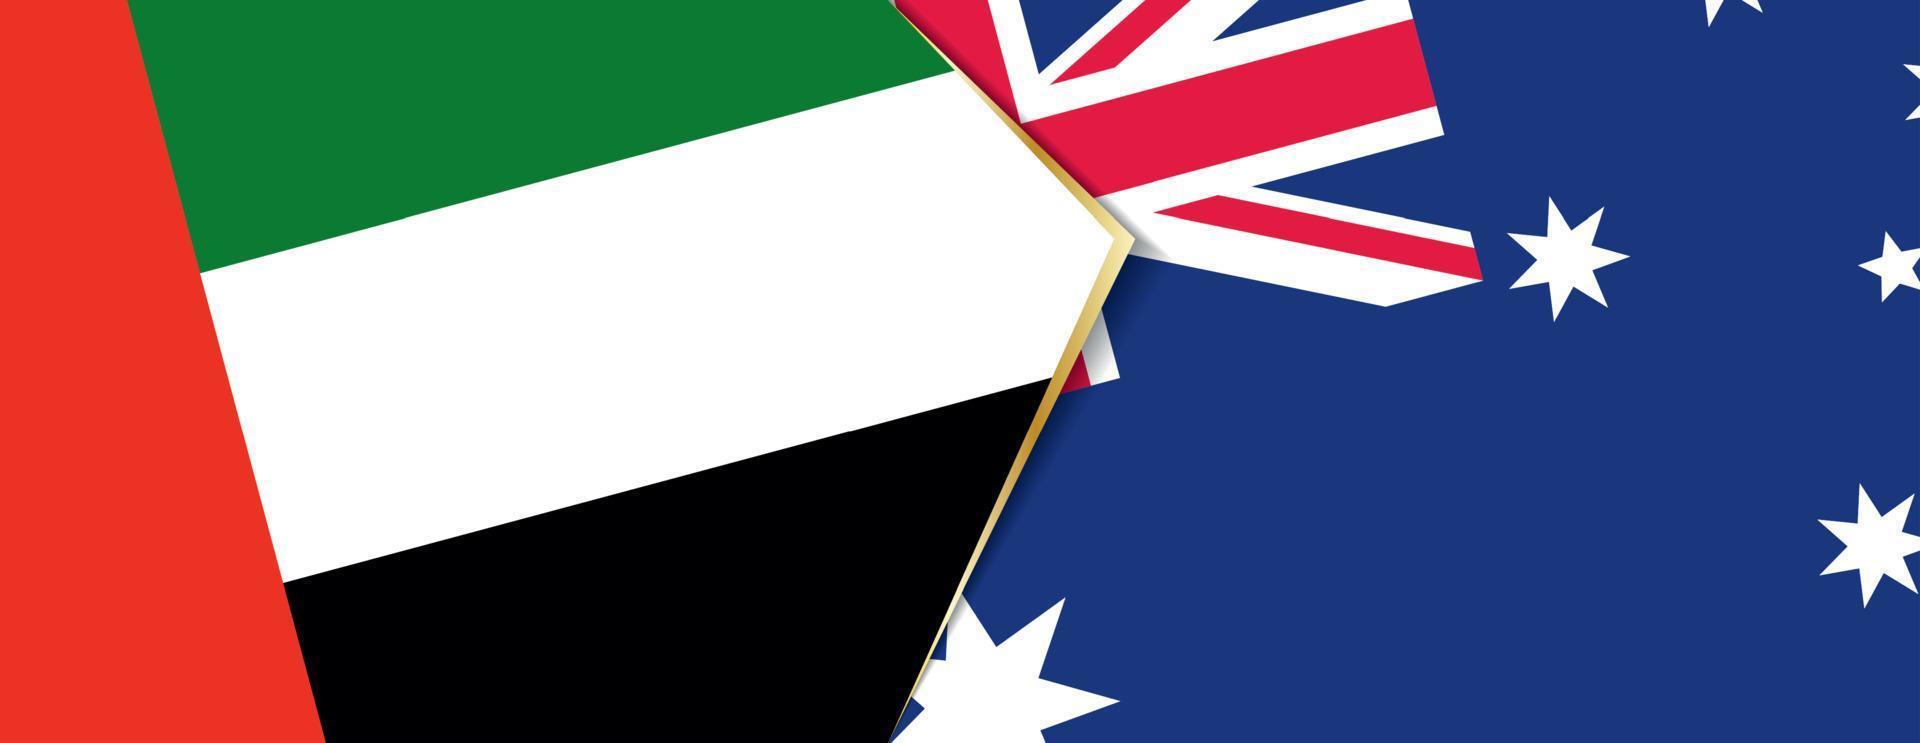 vereinigt arabisch Emirate und Australien Flaggen, zwei Vektor Flaggen.